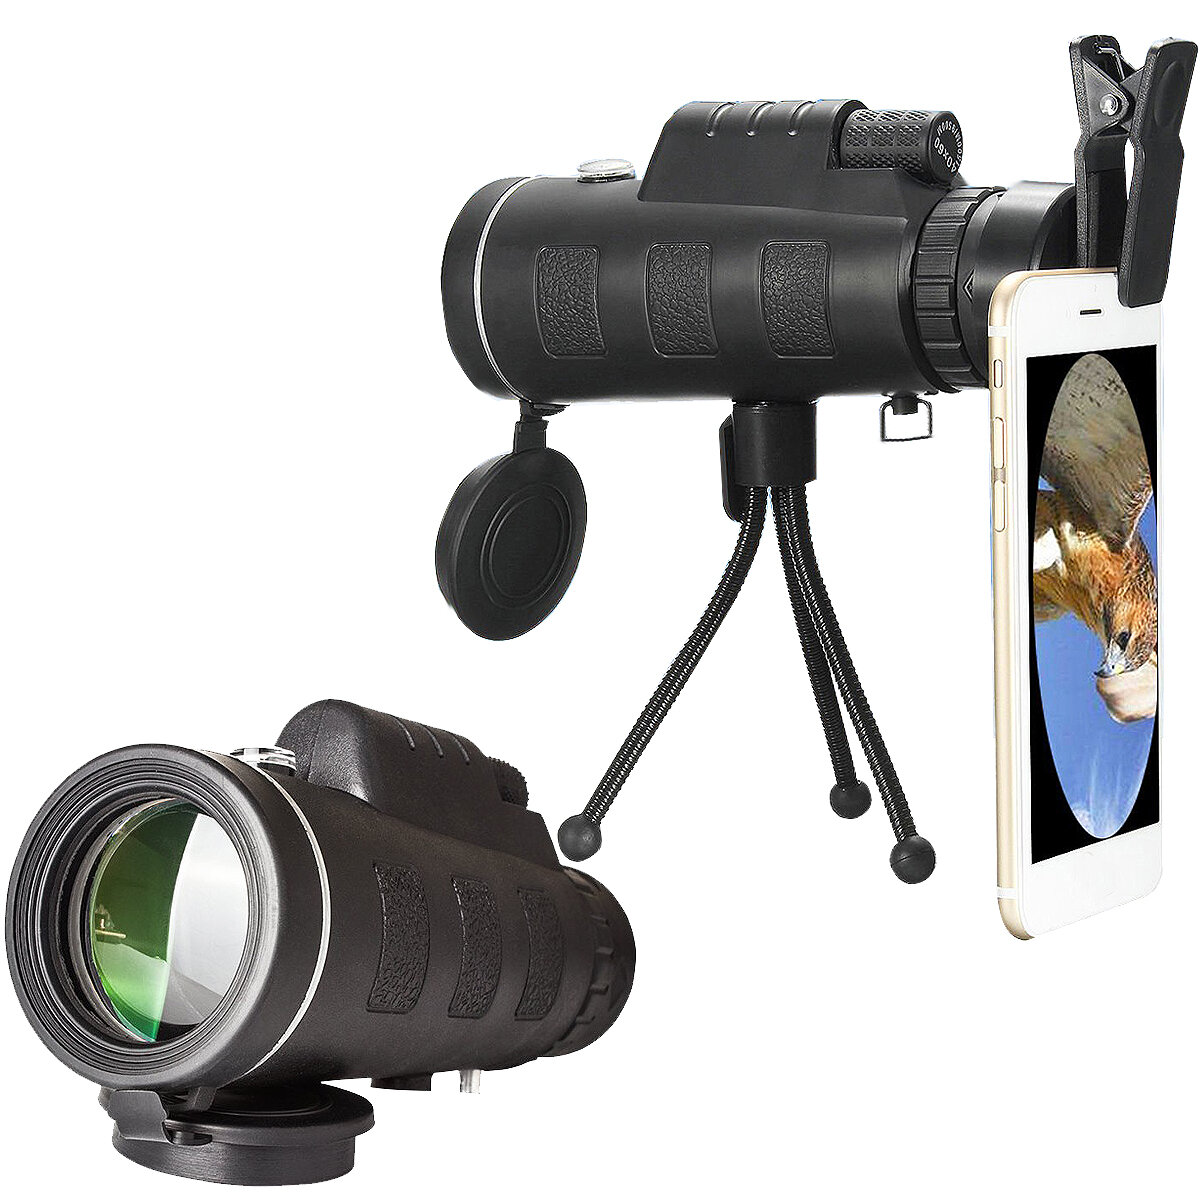 40X60 Outdoor-Optiklinse Teleskop mit Clip für Universal-Handy + Stativ